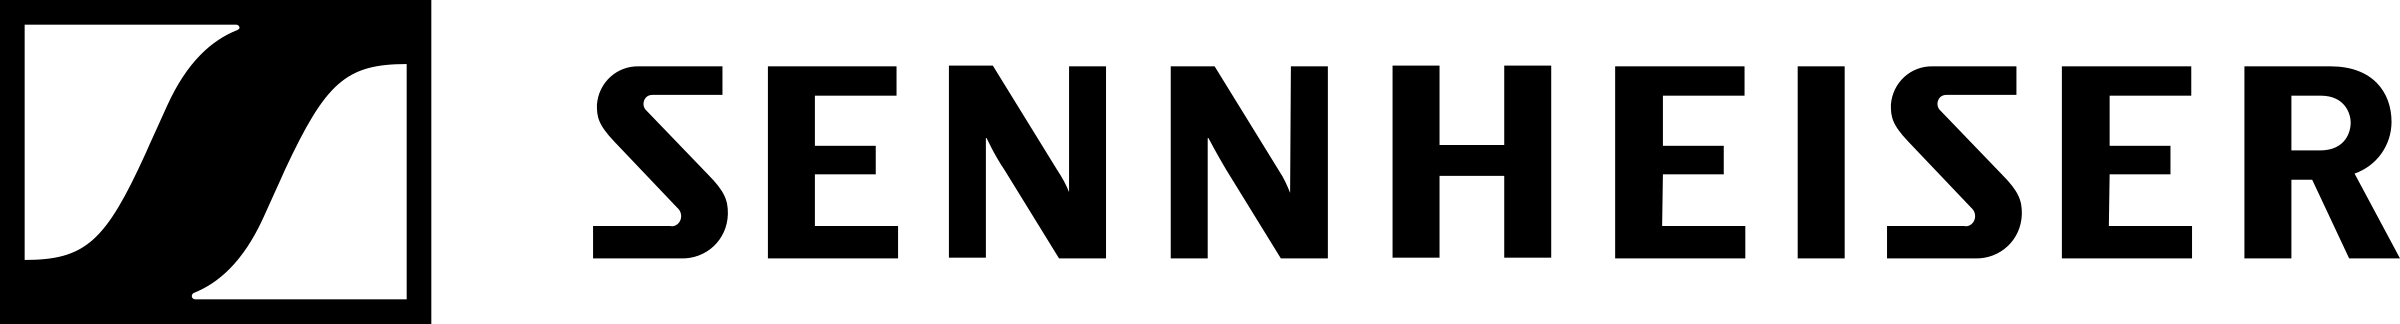 sennheiser-3-logo-black-and-white.png